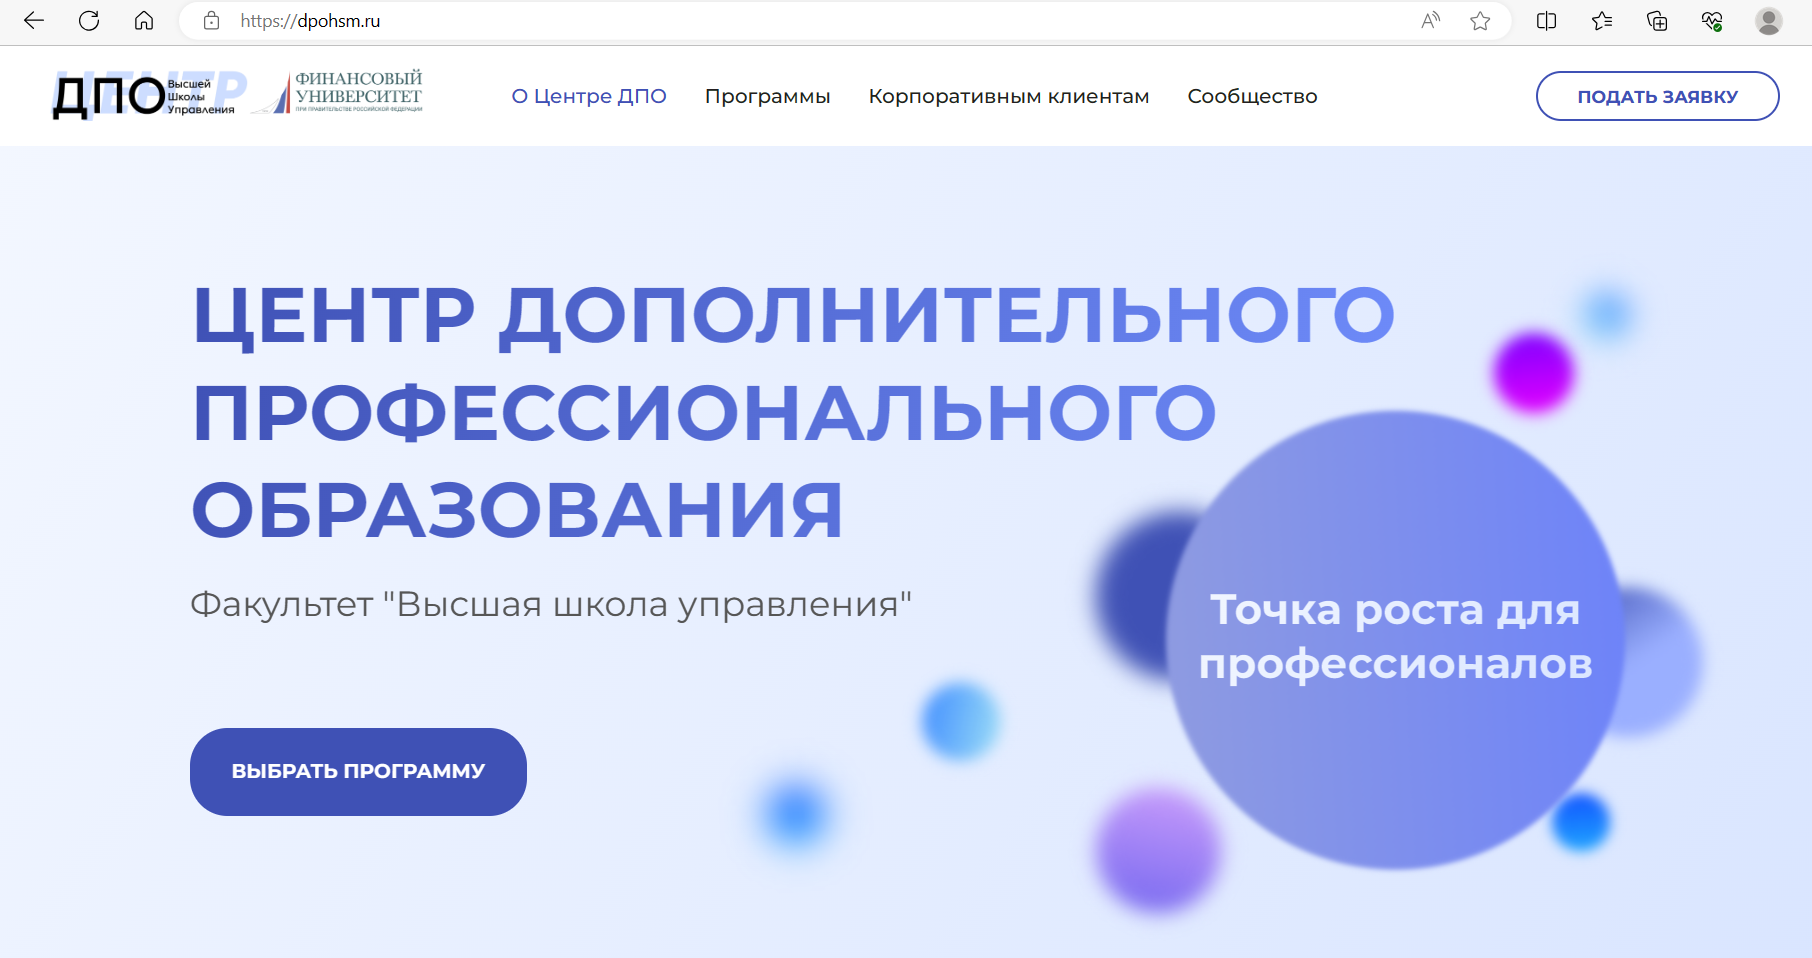 Центр ДПО ВШУ запустил собственный сайт